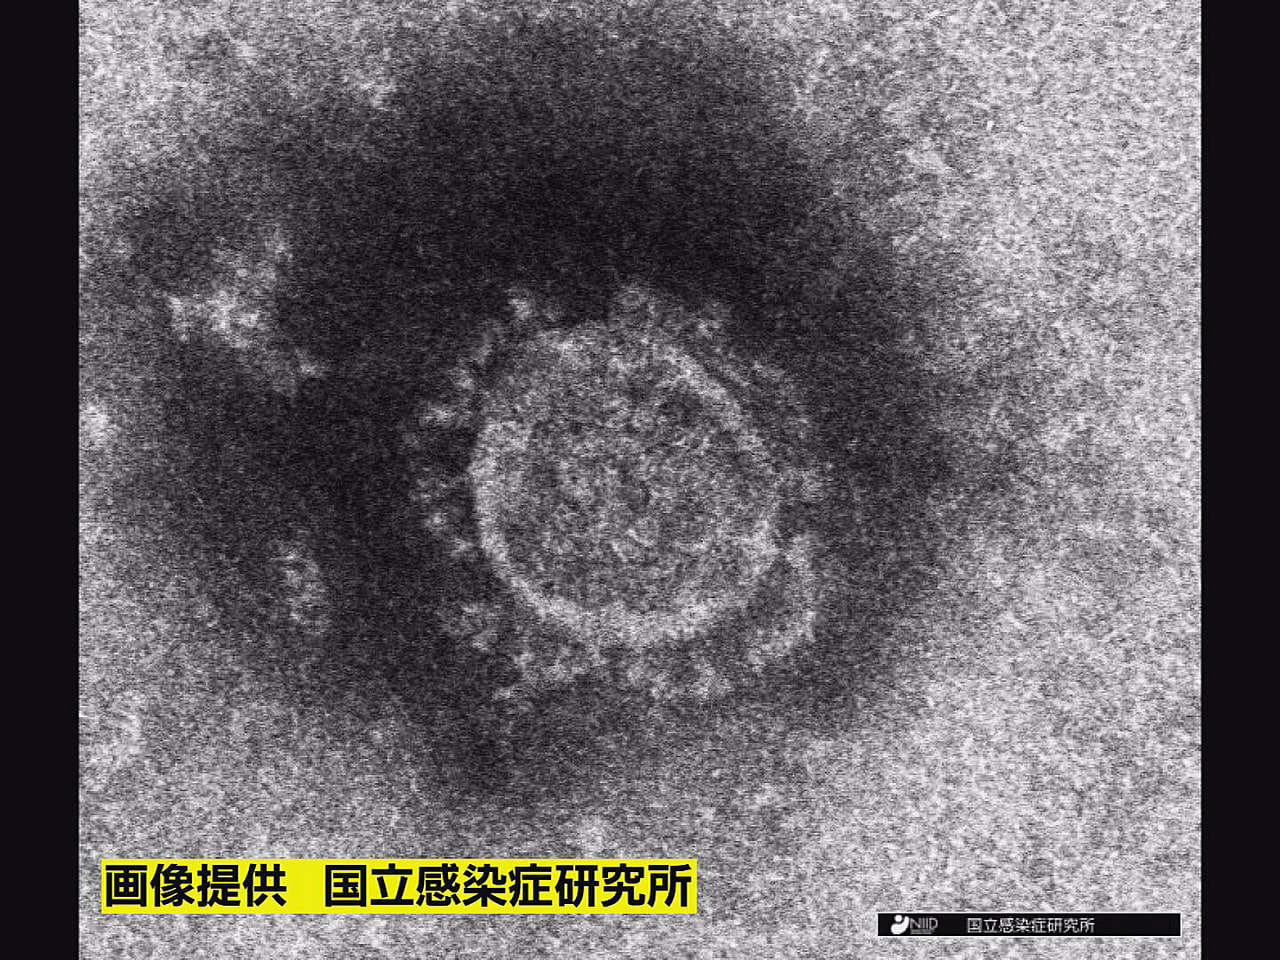 岐阜県は１日、新型コロナウイルスの新規感染者が３３２人確認されたと発表しました。...